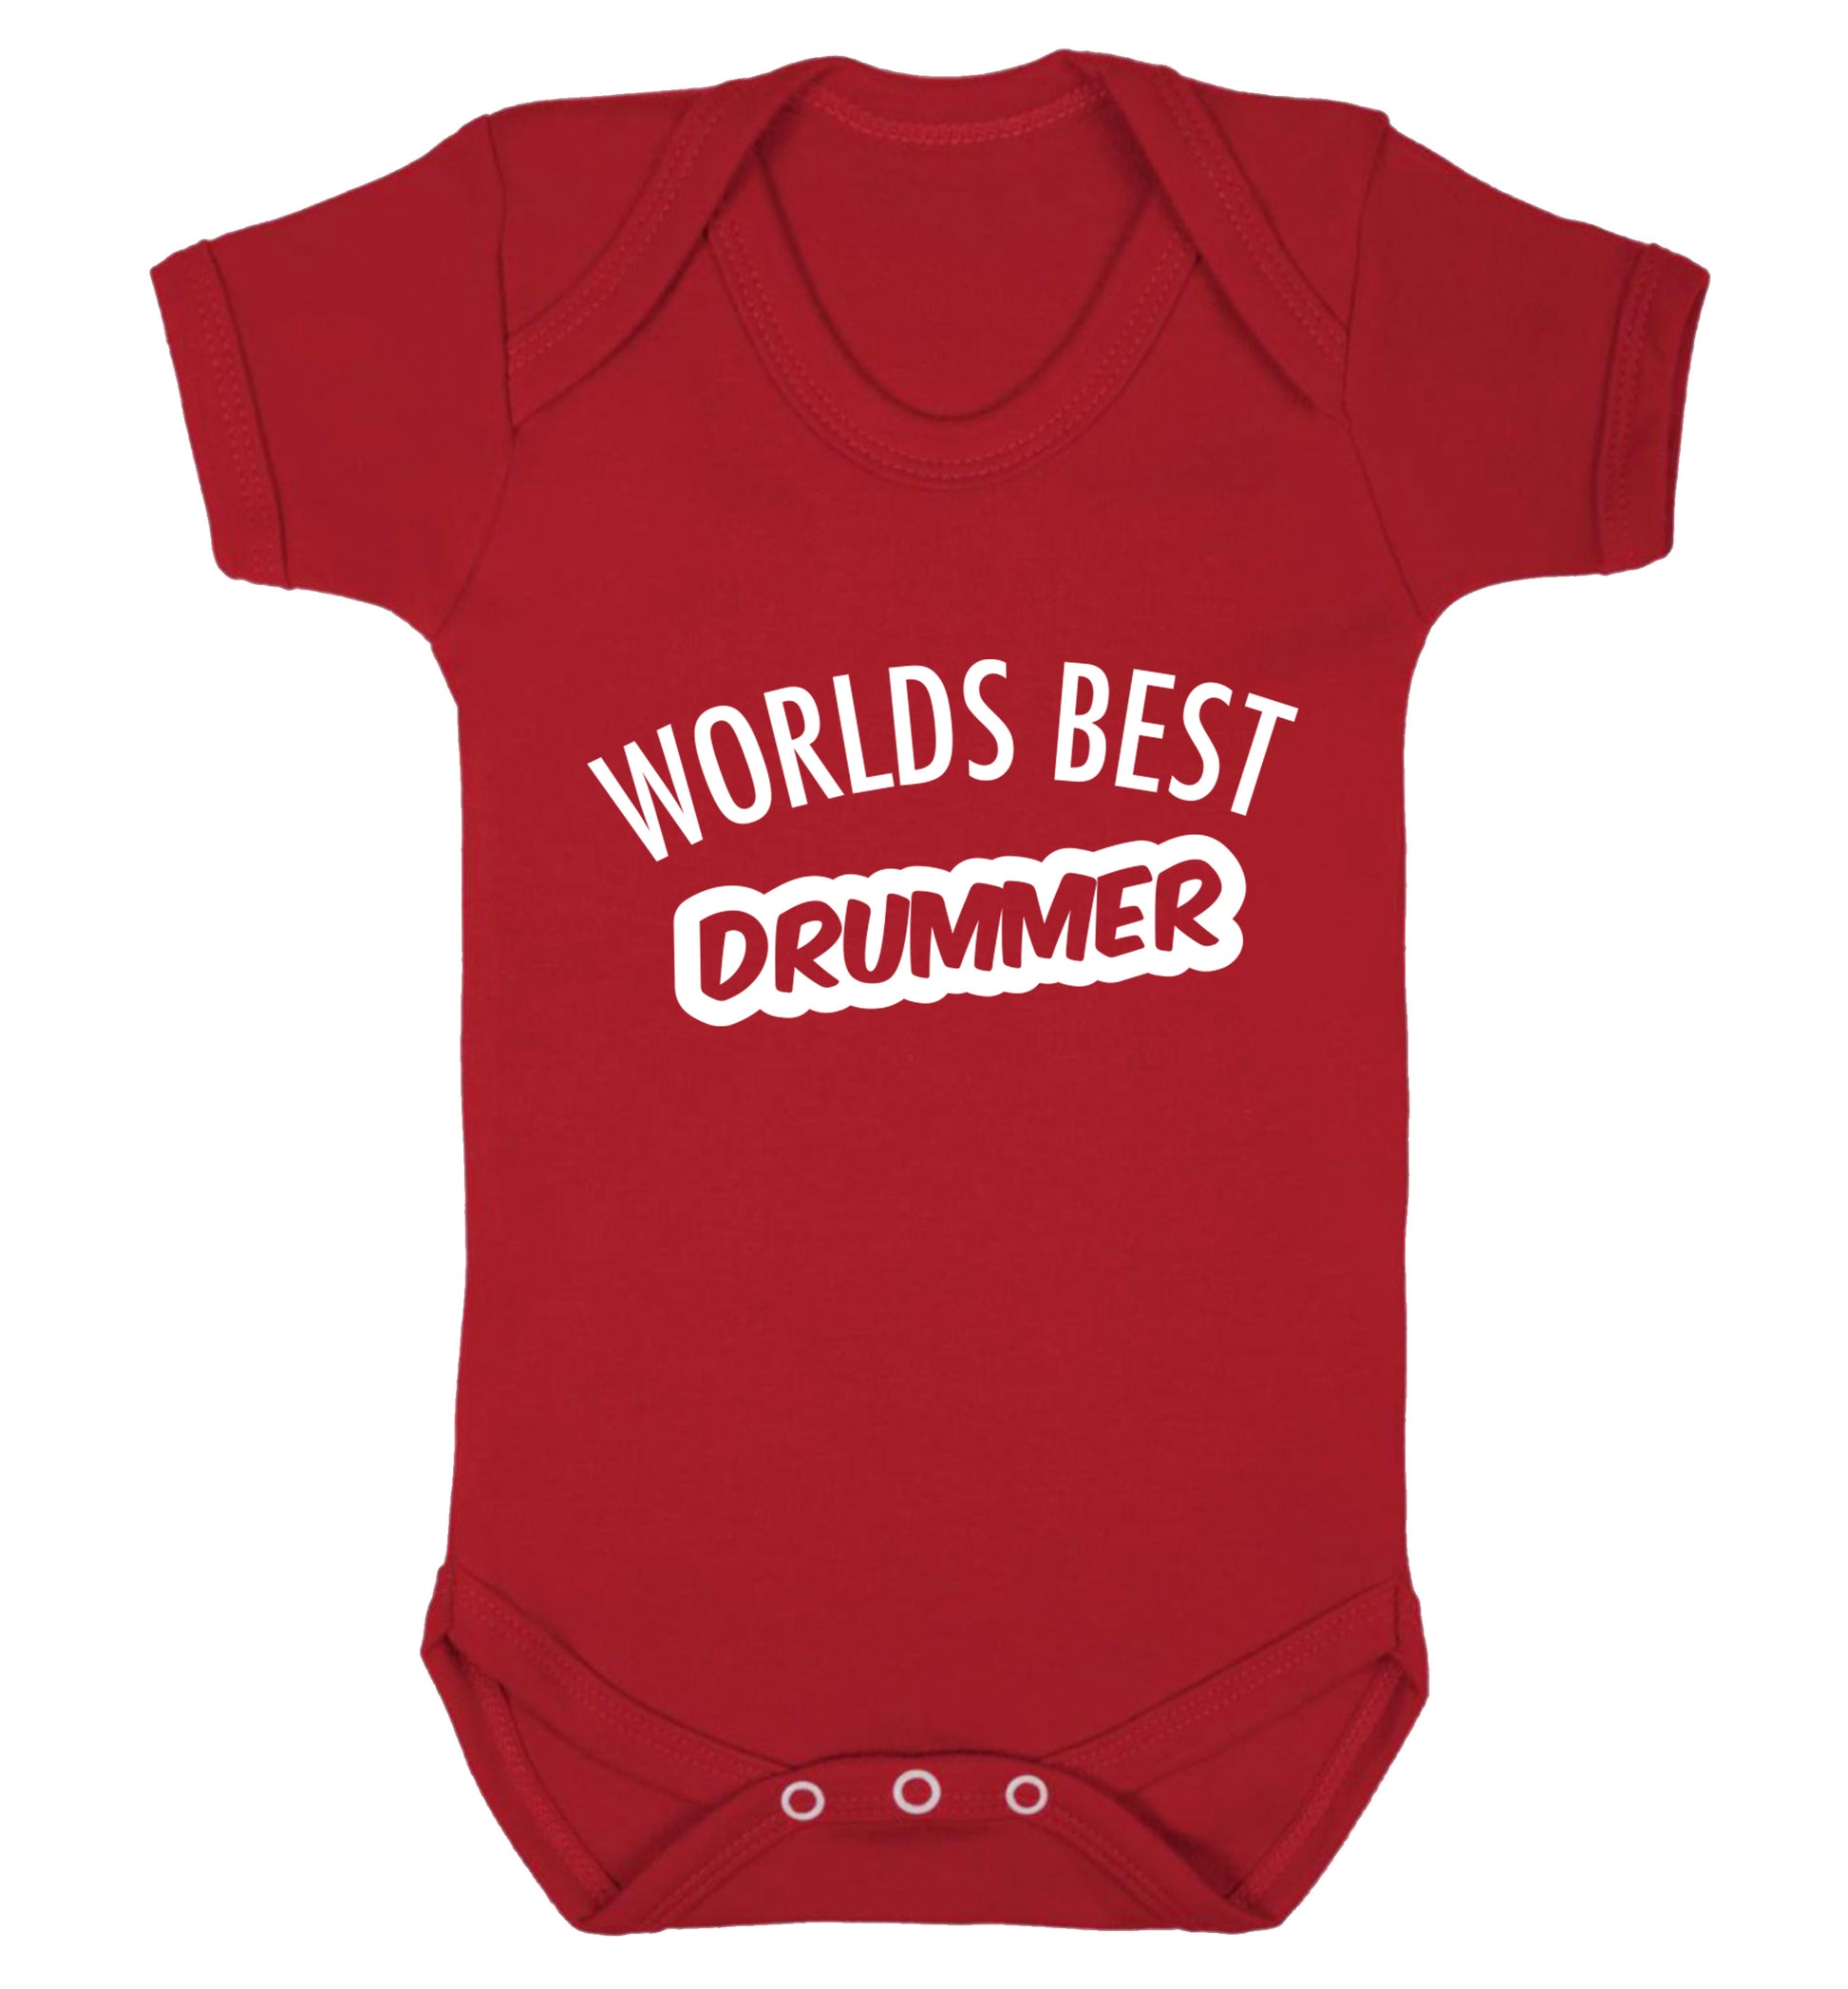 Worlds best drummer Baby Vest red 18-24 months